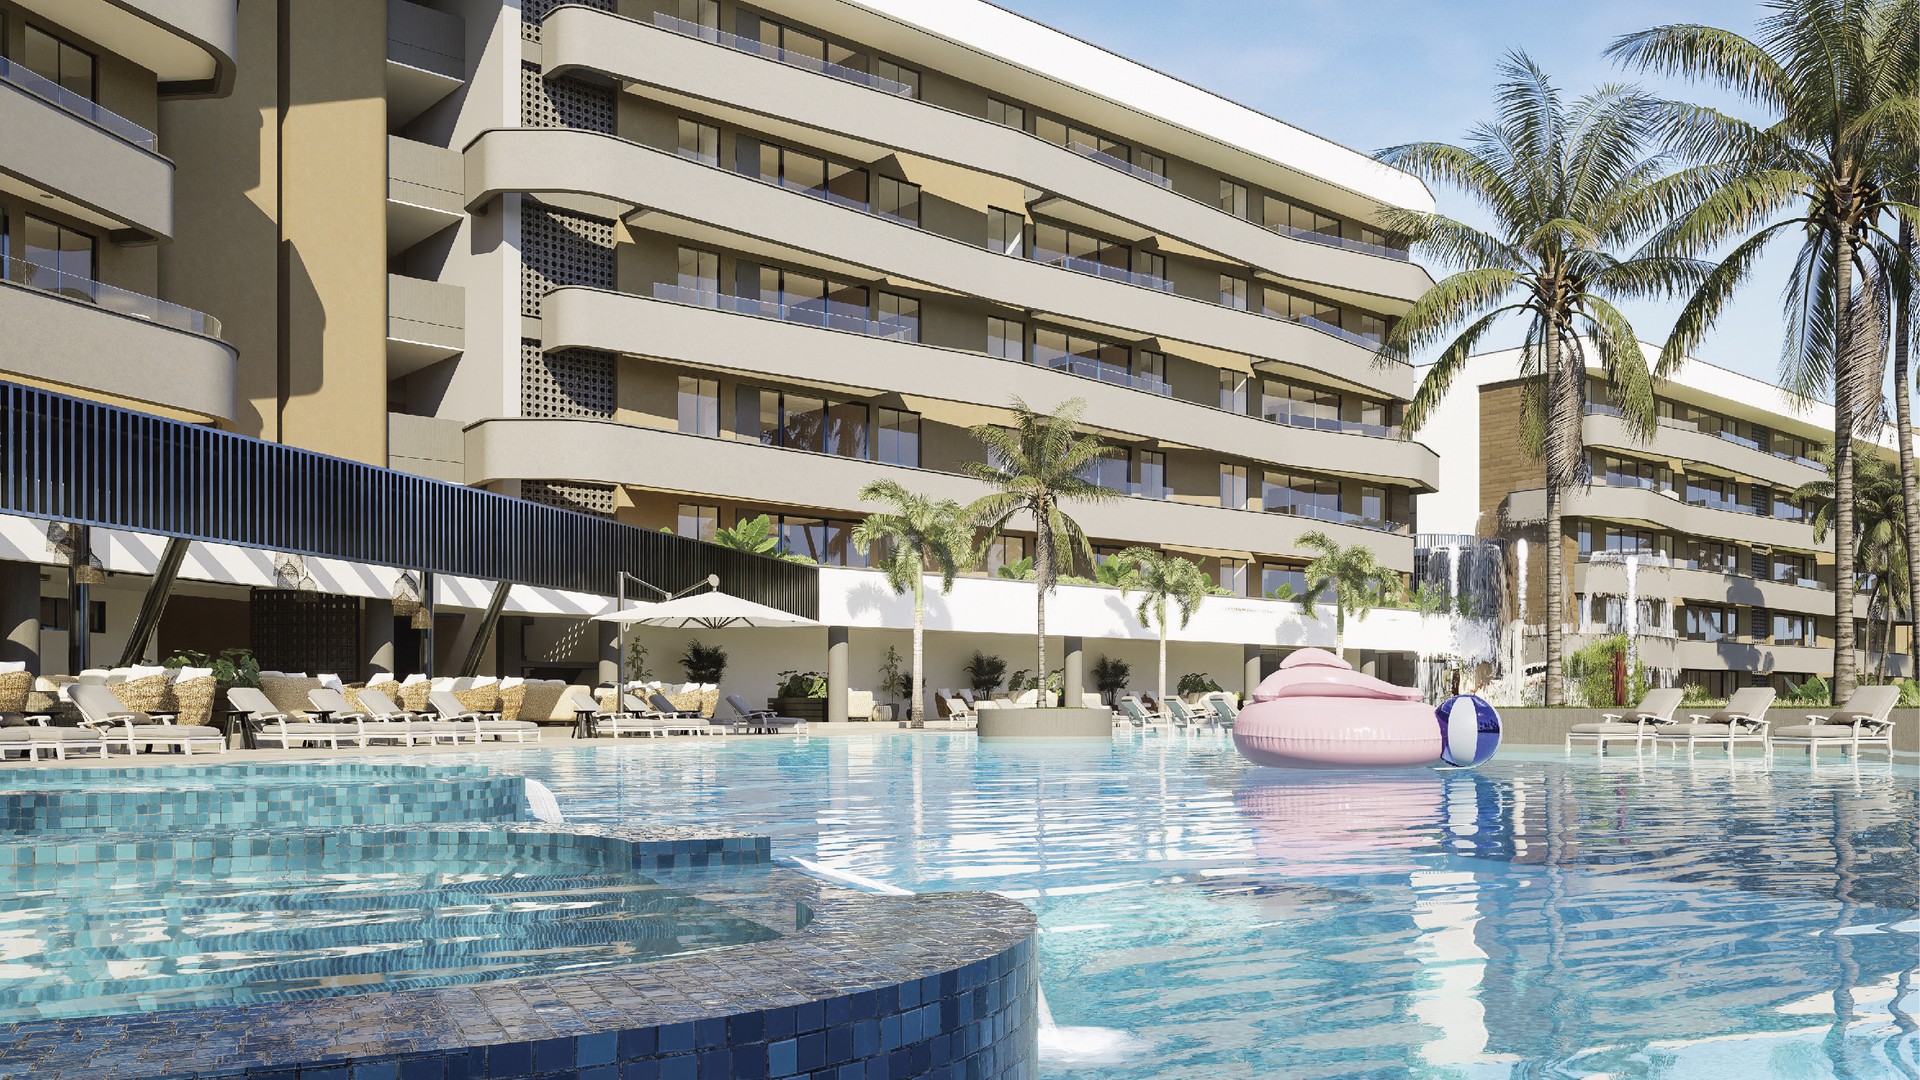 apartamentos - Venta de apartamentos en bávaro Punta cana con Club de Playa y campo de golf. 0